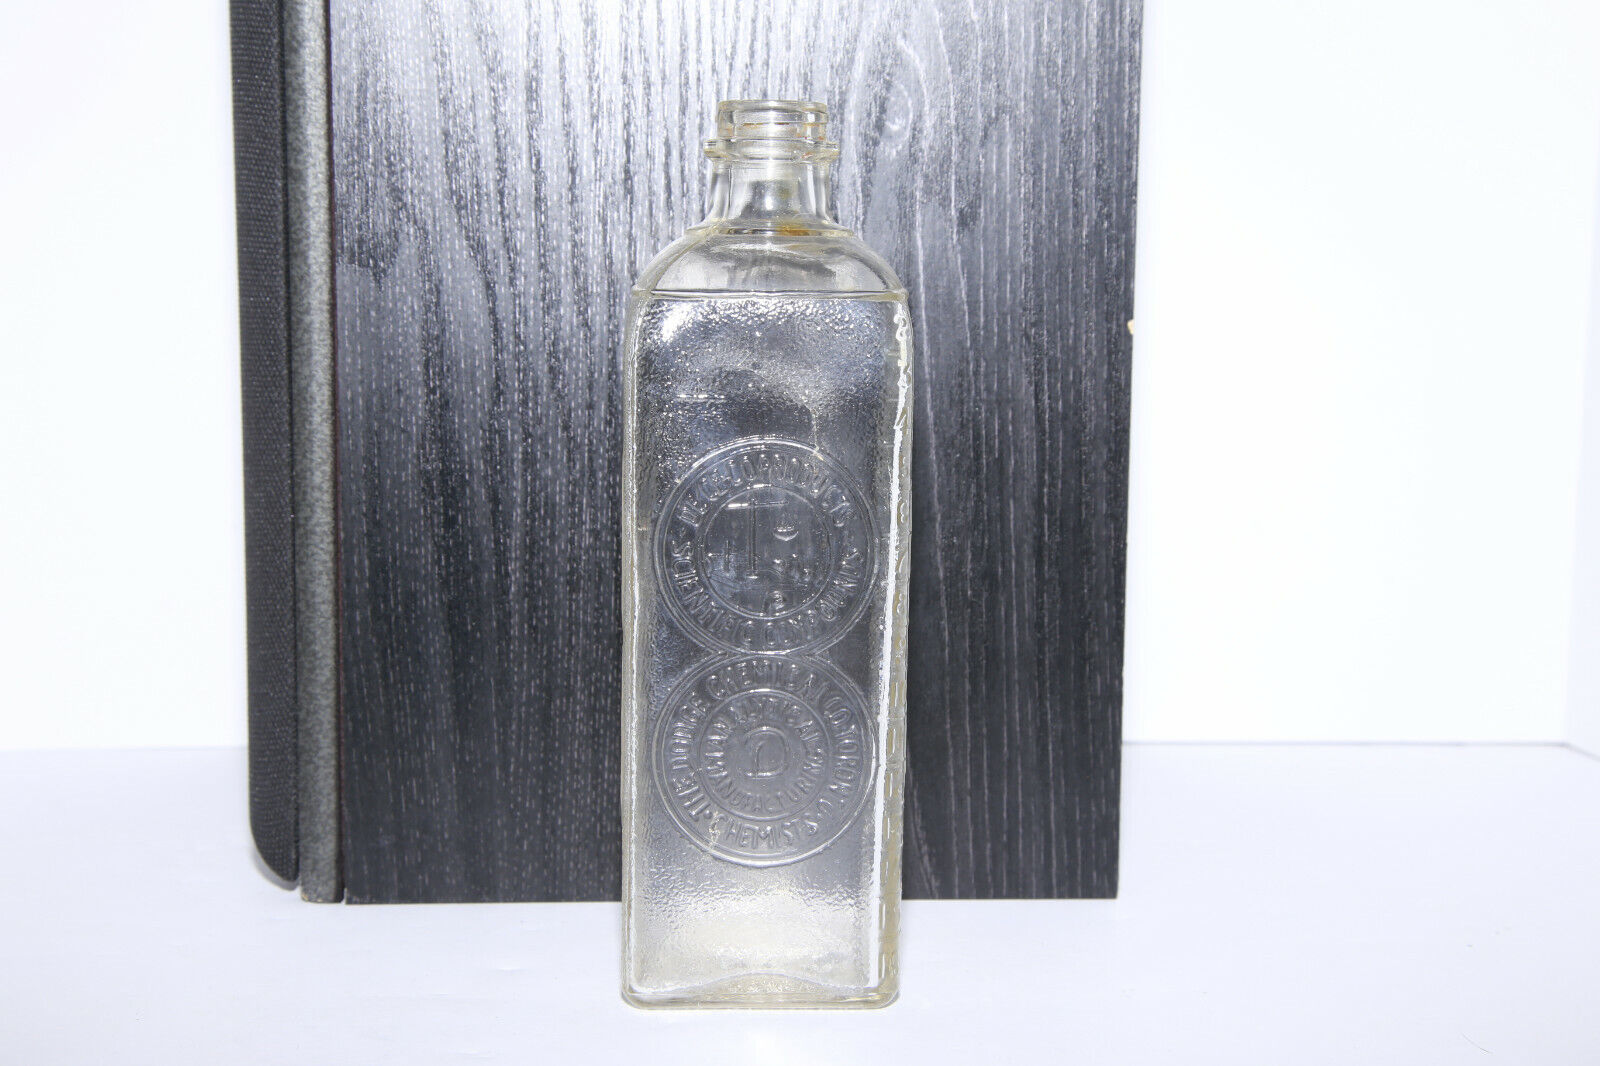 1936 De Ce-Co Products Scientific Compounds The Dodge Chemical Co Toronto Bottle